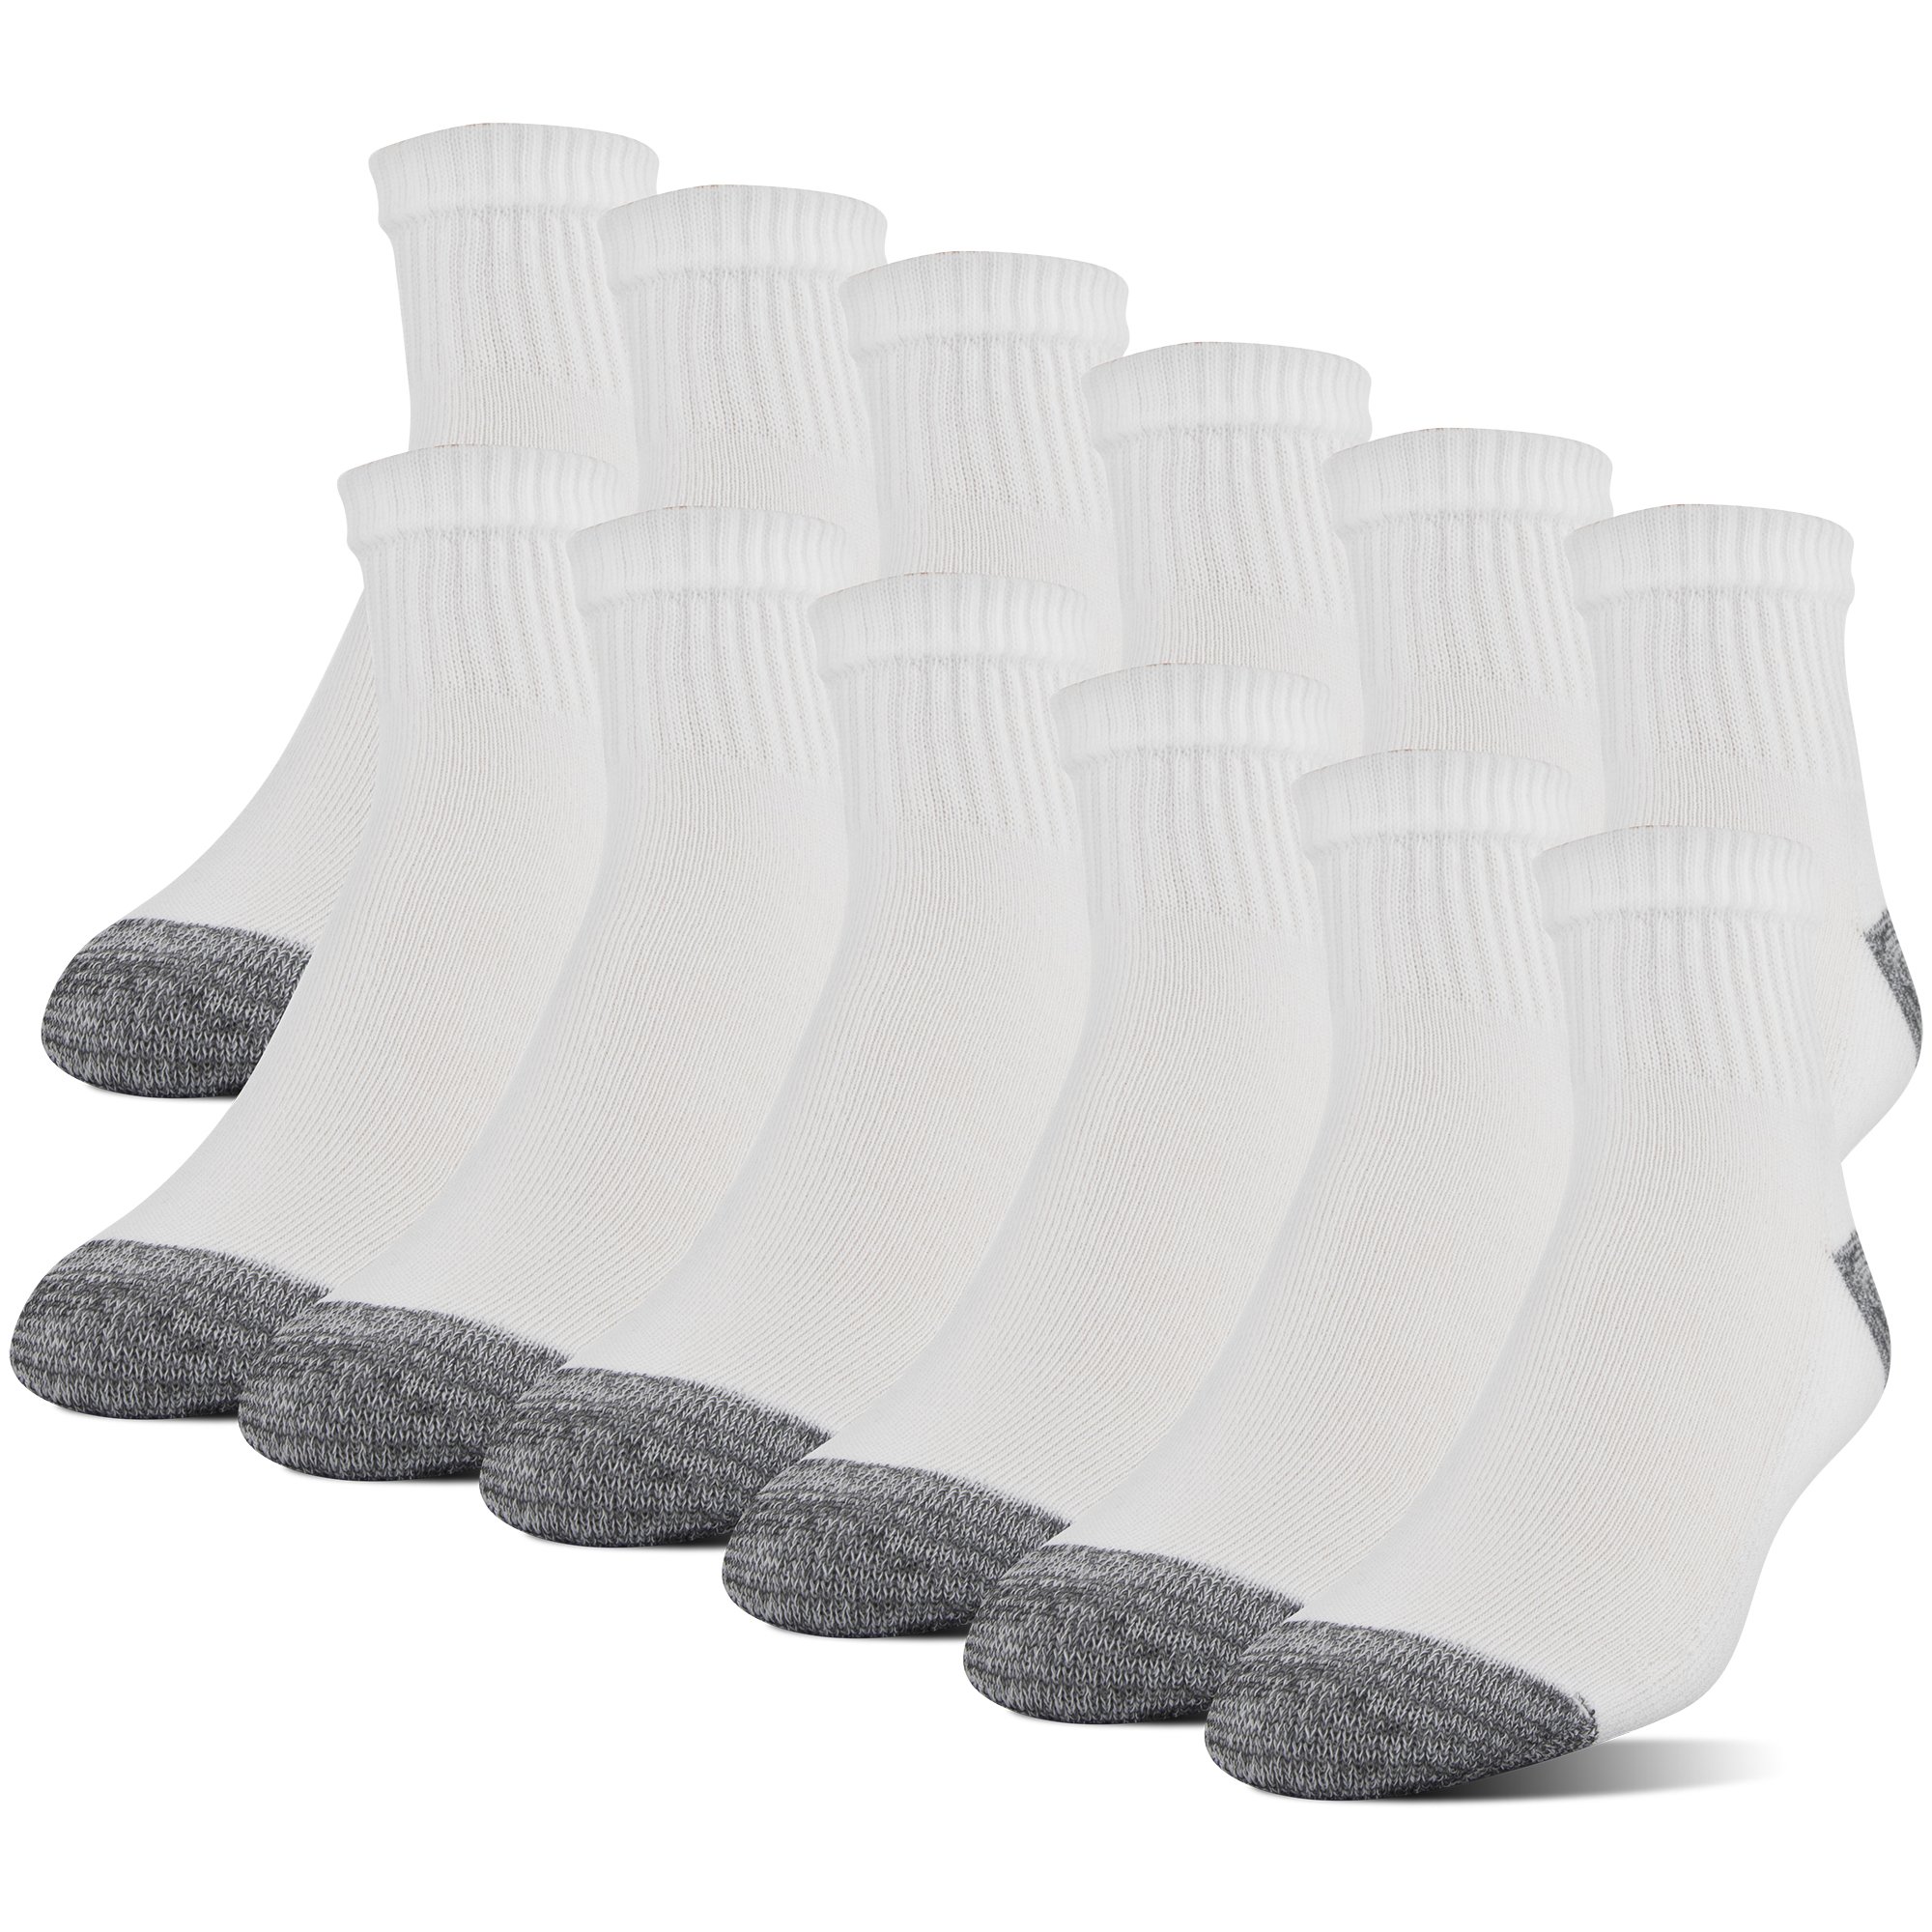 Gildan Men's Polyester Half Cushion Ankle Socks, 12-Pack